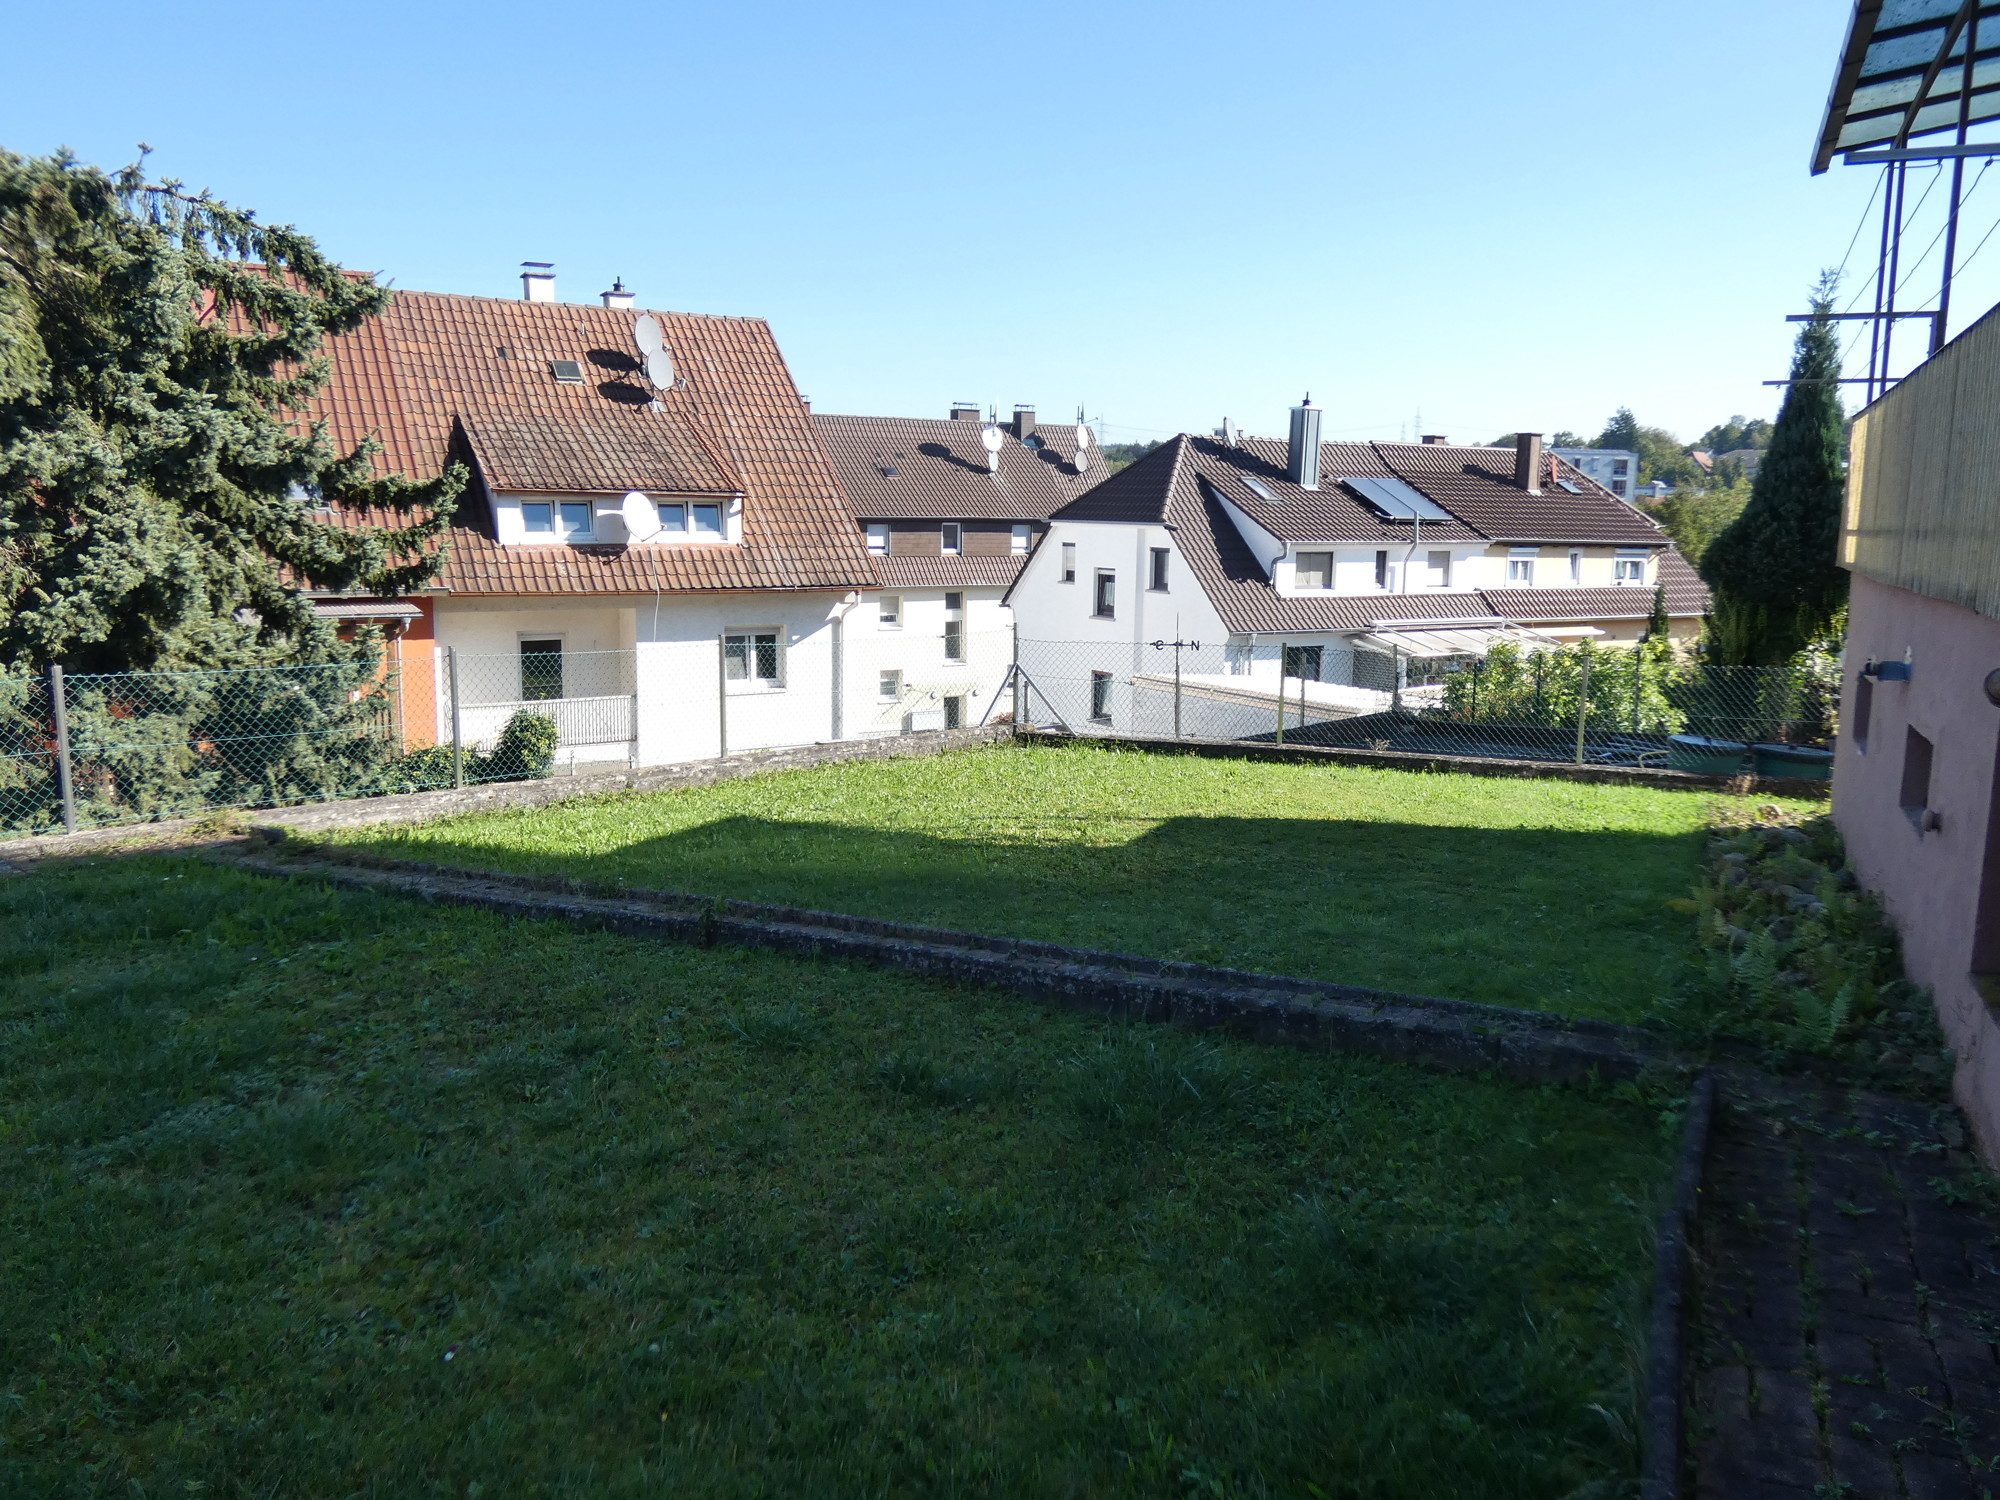 HUST Immobilien GmbH & Co. KG - Immobilienangebot - Bretten - Alle - Dieses 2-Familienhaus in Ihrer Nachbarschaft wurde gerade erst VERKAUFT!